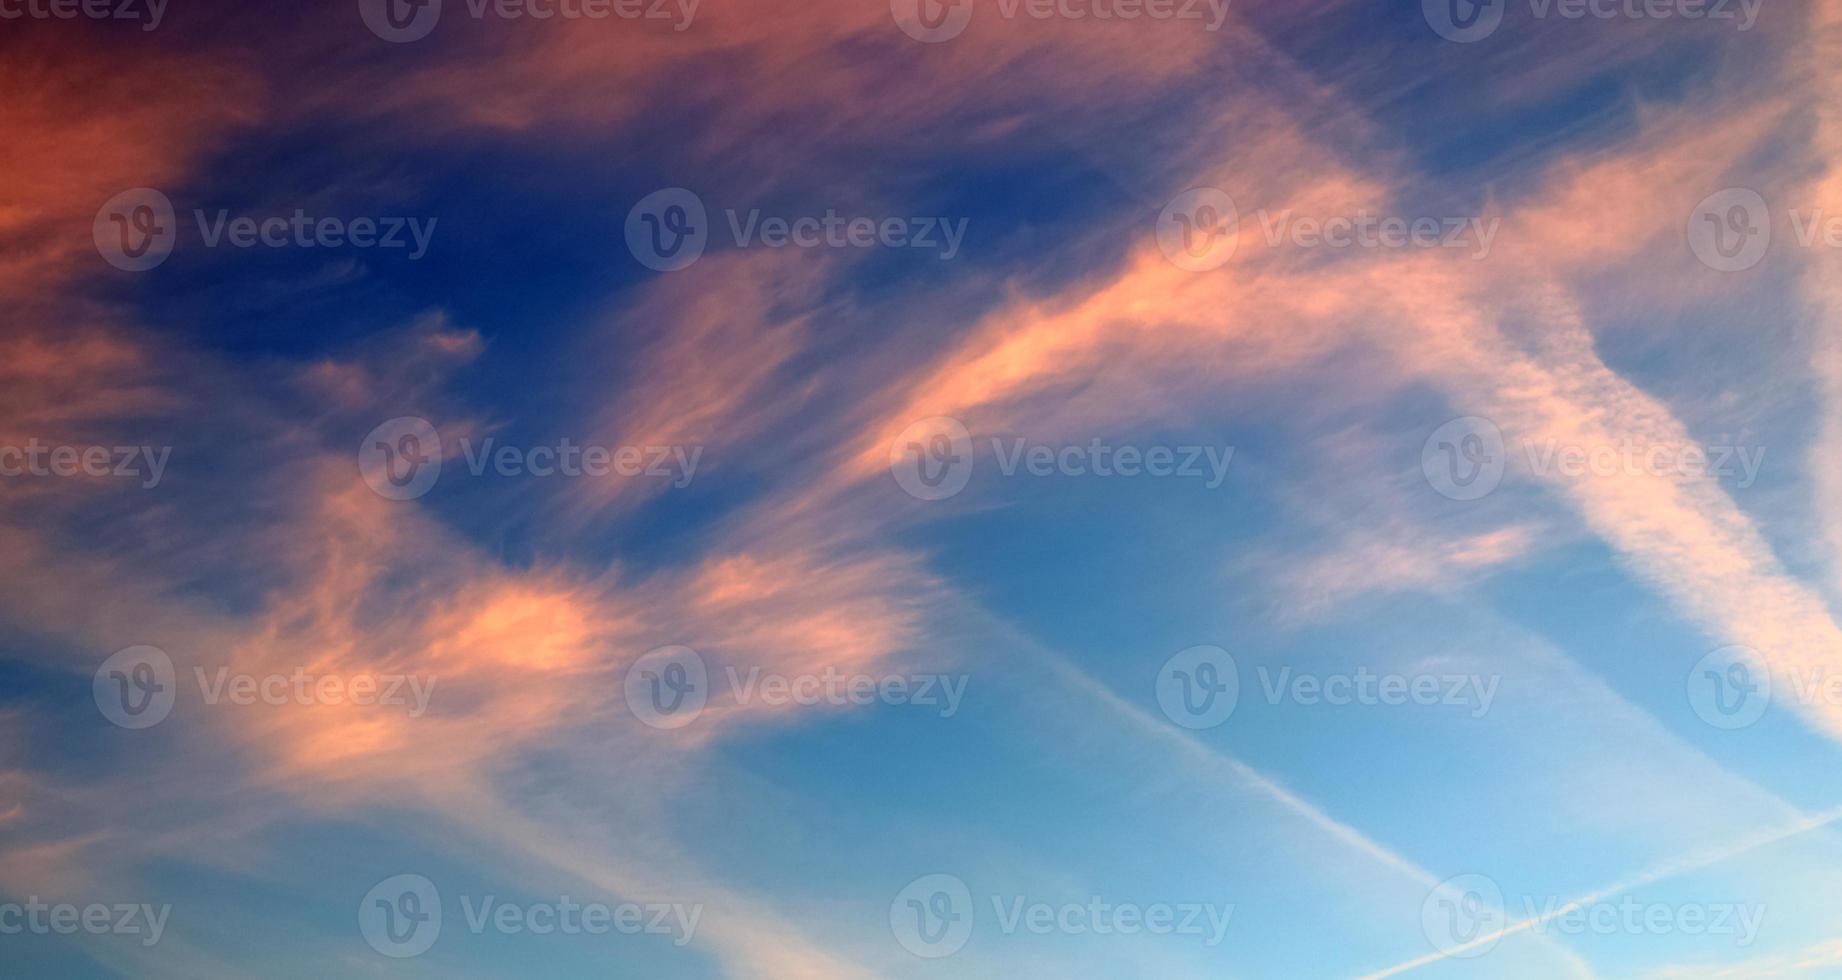 flygplanskondensation drar ihop sig på den blå himlen mellan några moln foto